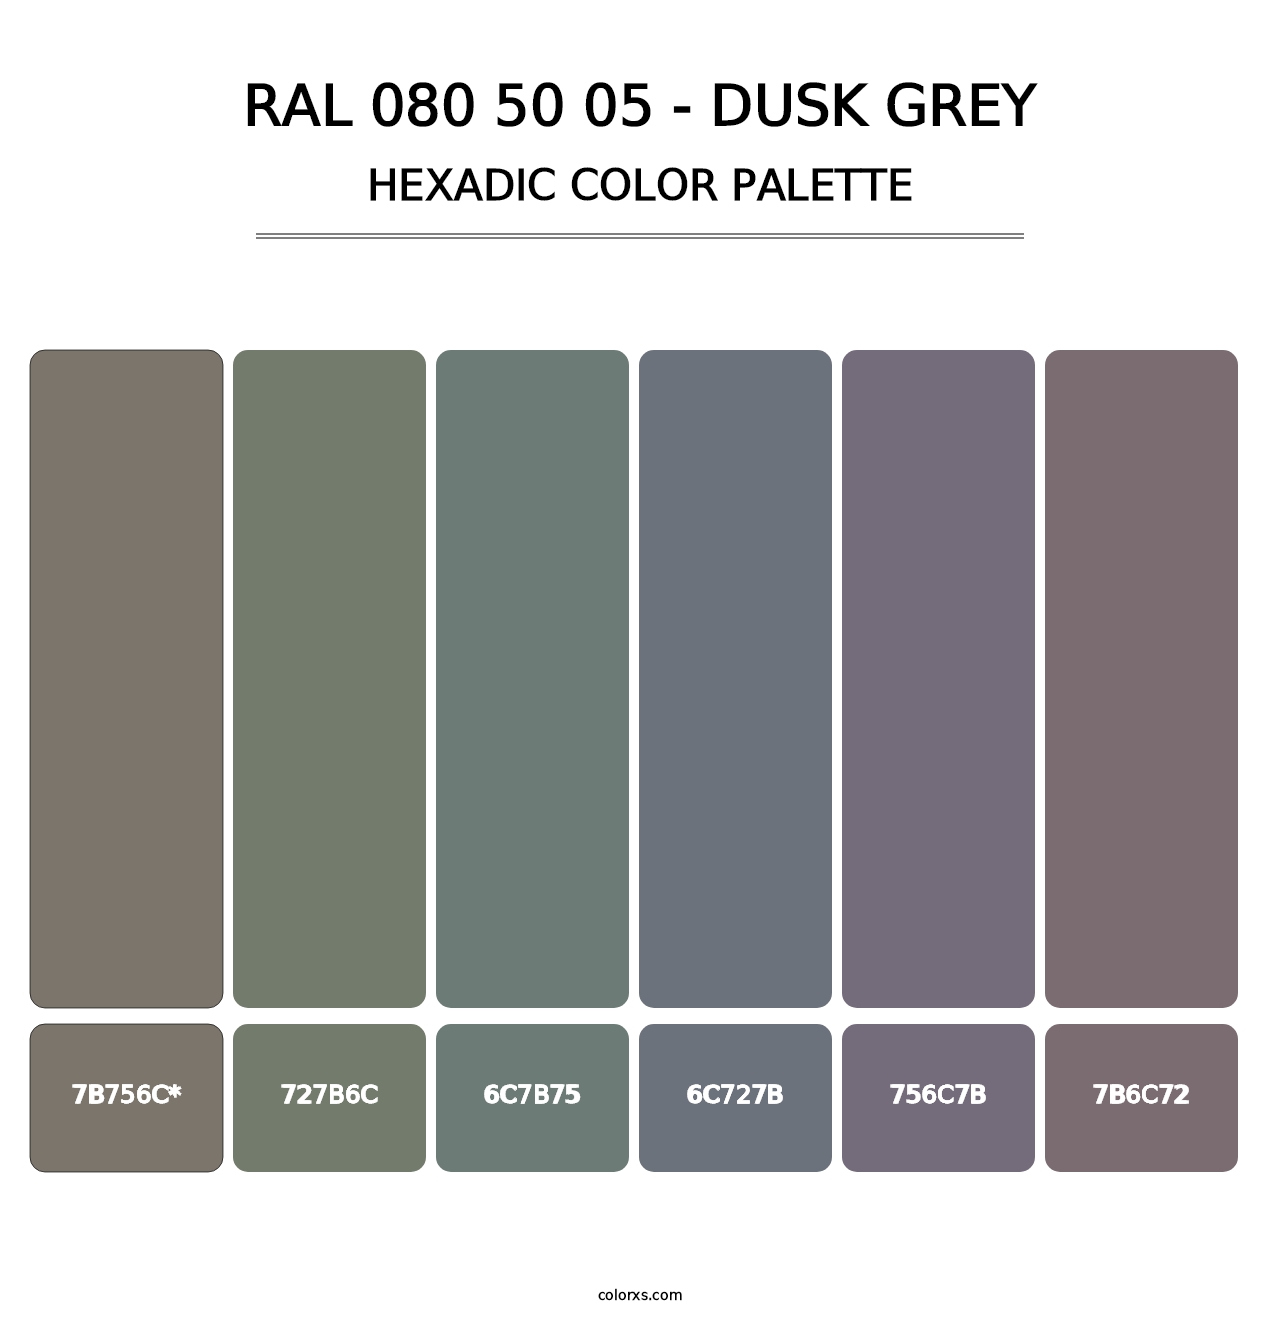 RAL 080 50 05 - Dusk Grey - Hexadic Color Palette